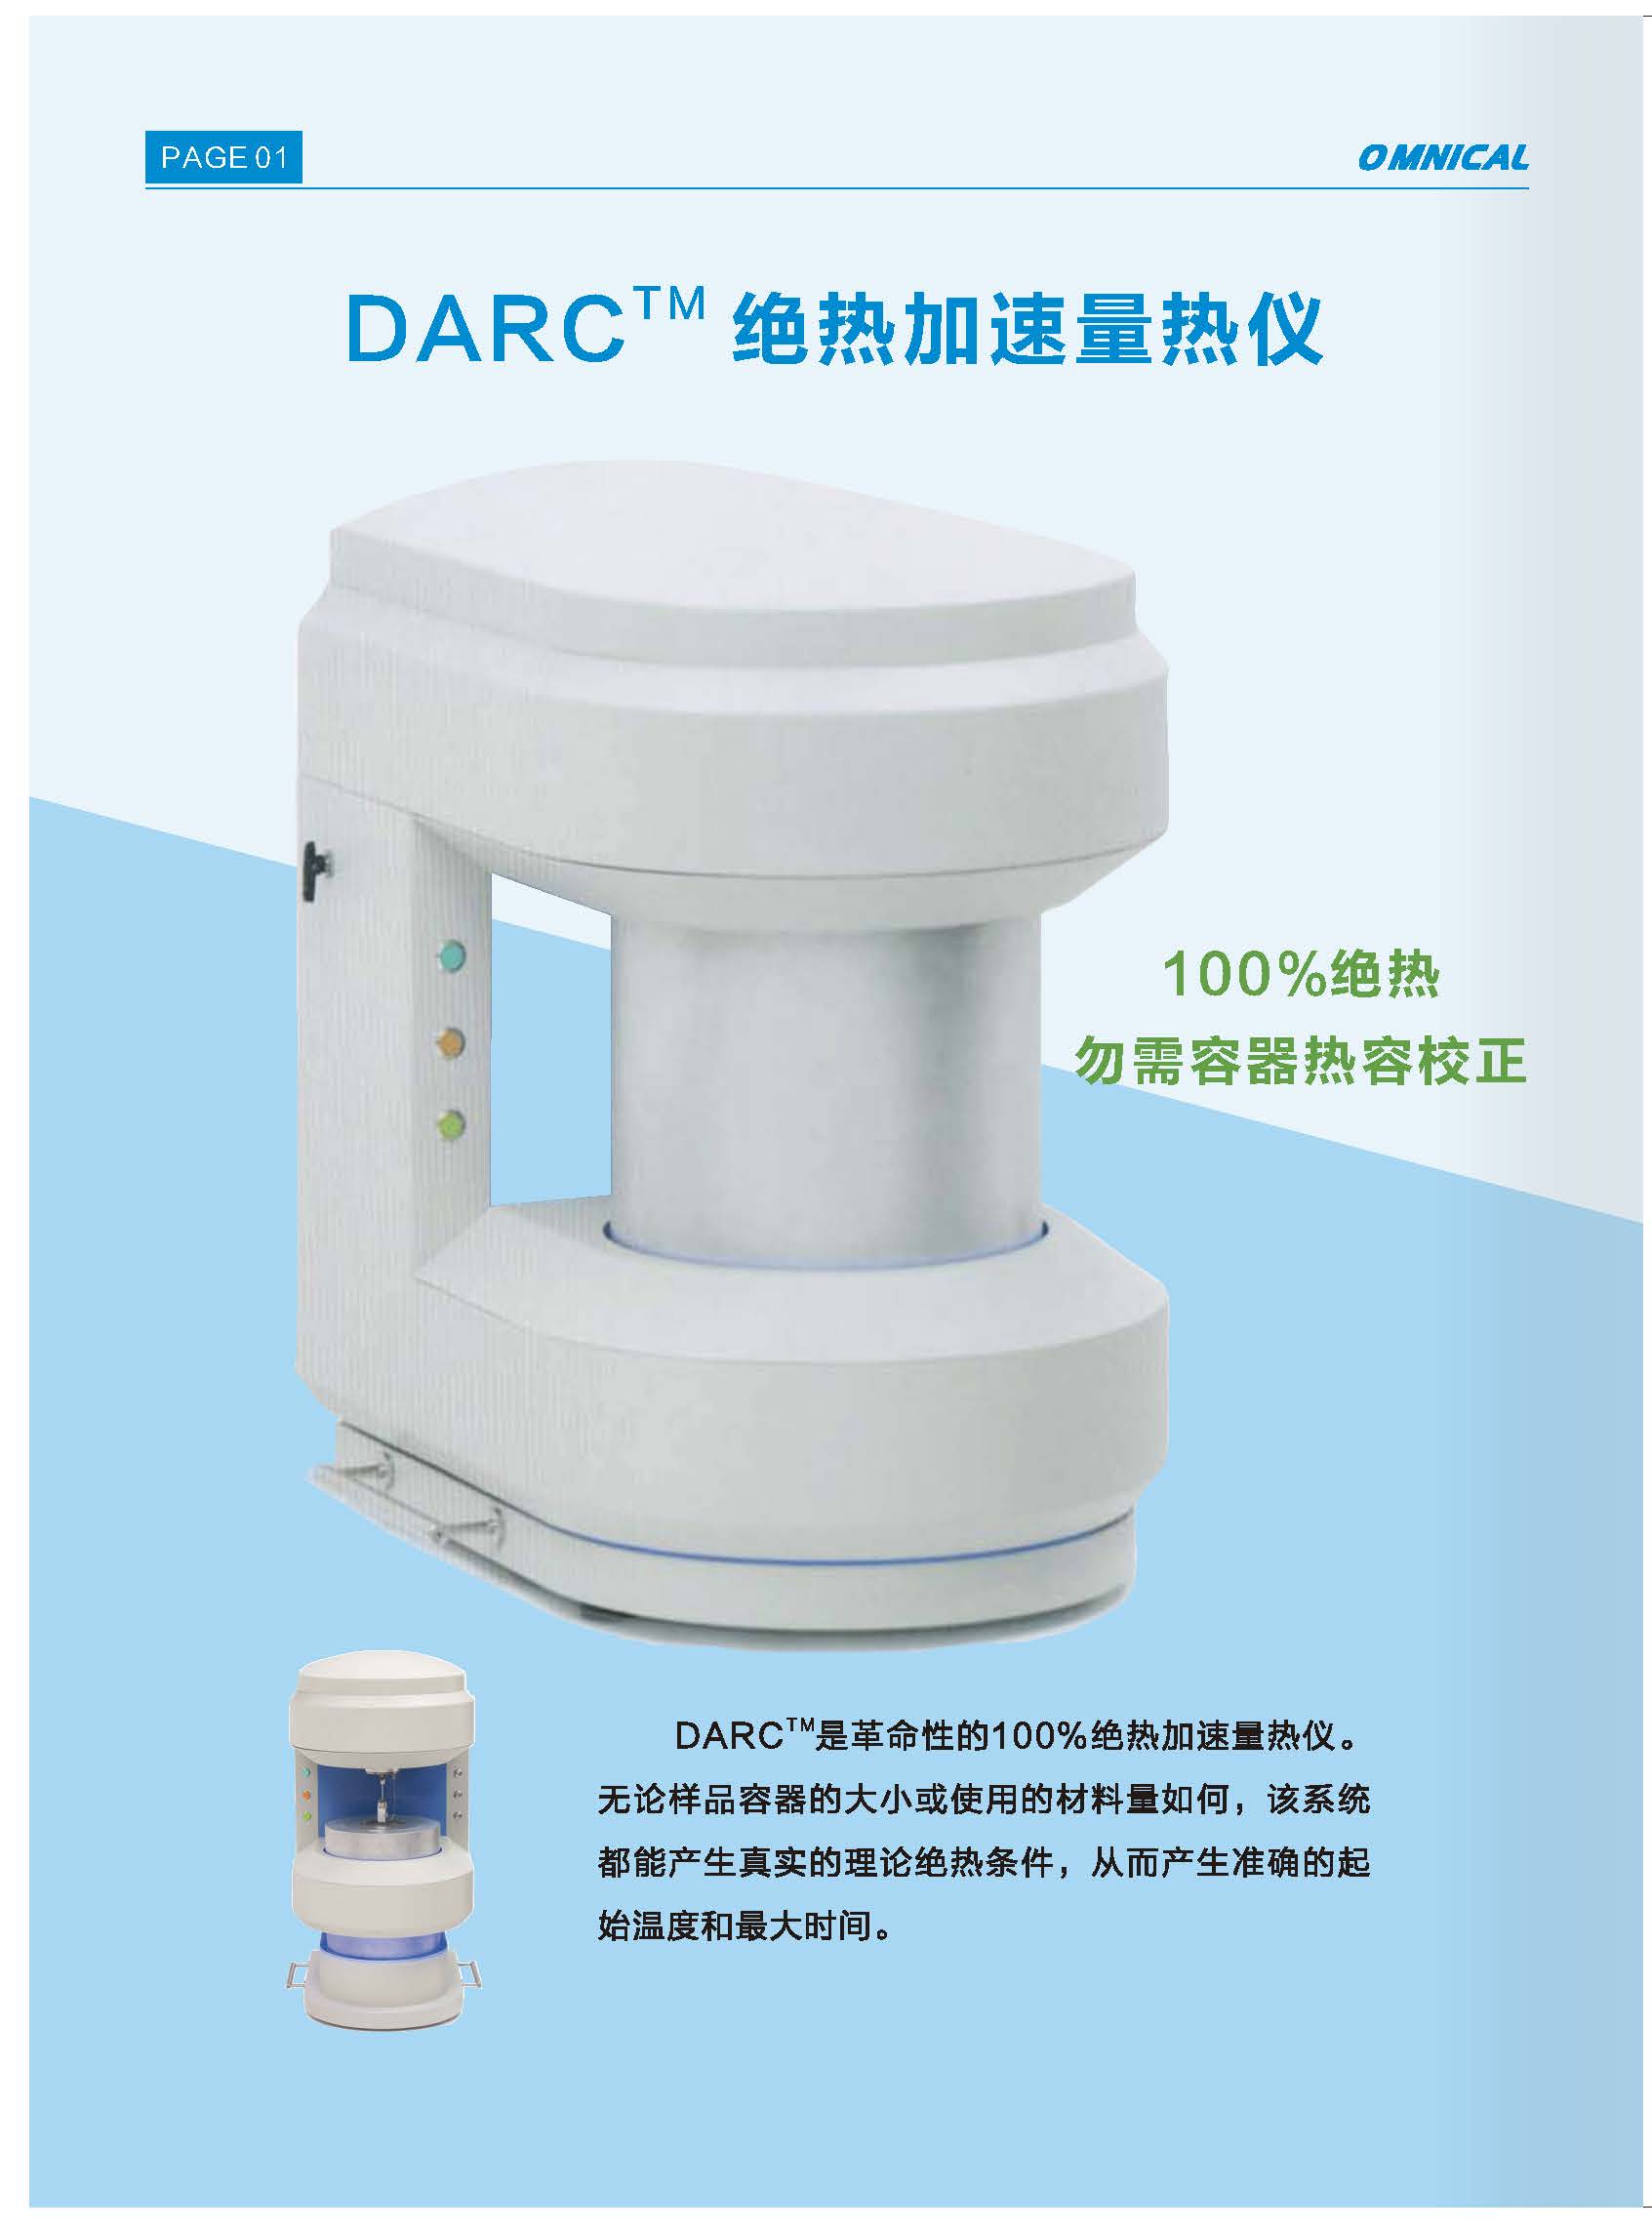 DARC绝热加速量热仪